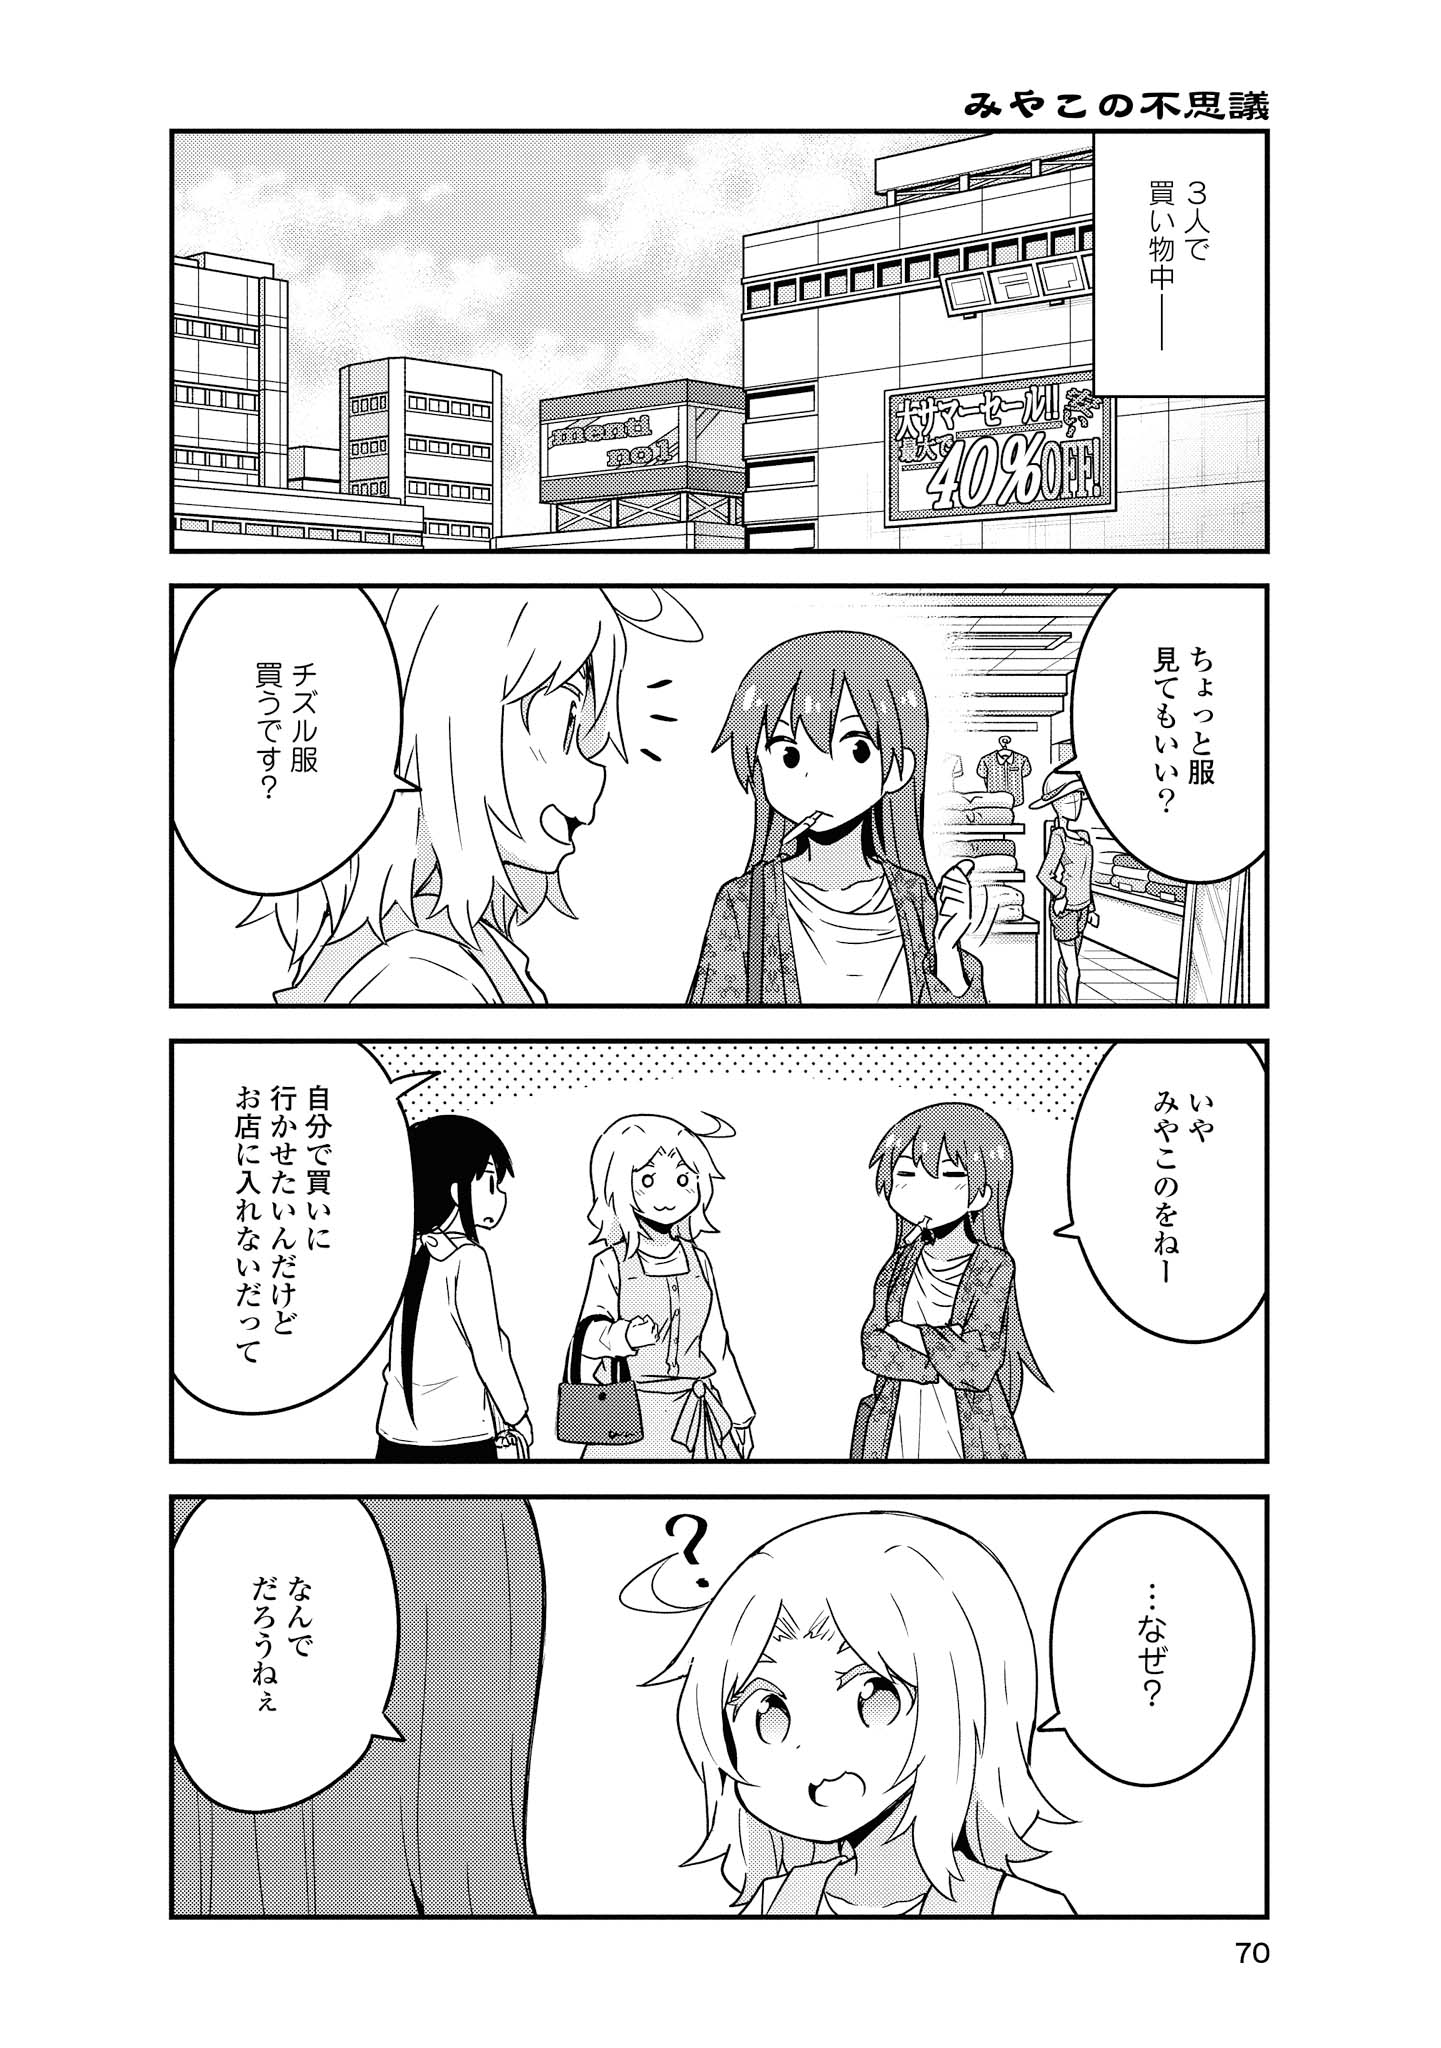 Watashi ni Tenshi ga Maiorita! - Chapter 56 - Page 4